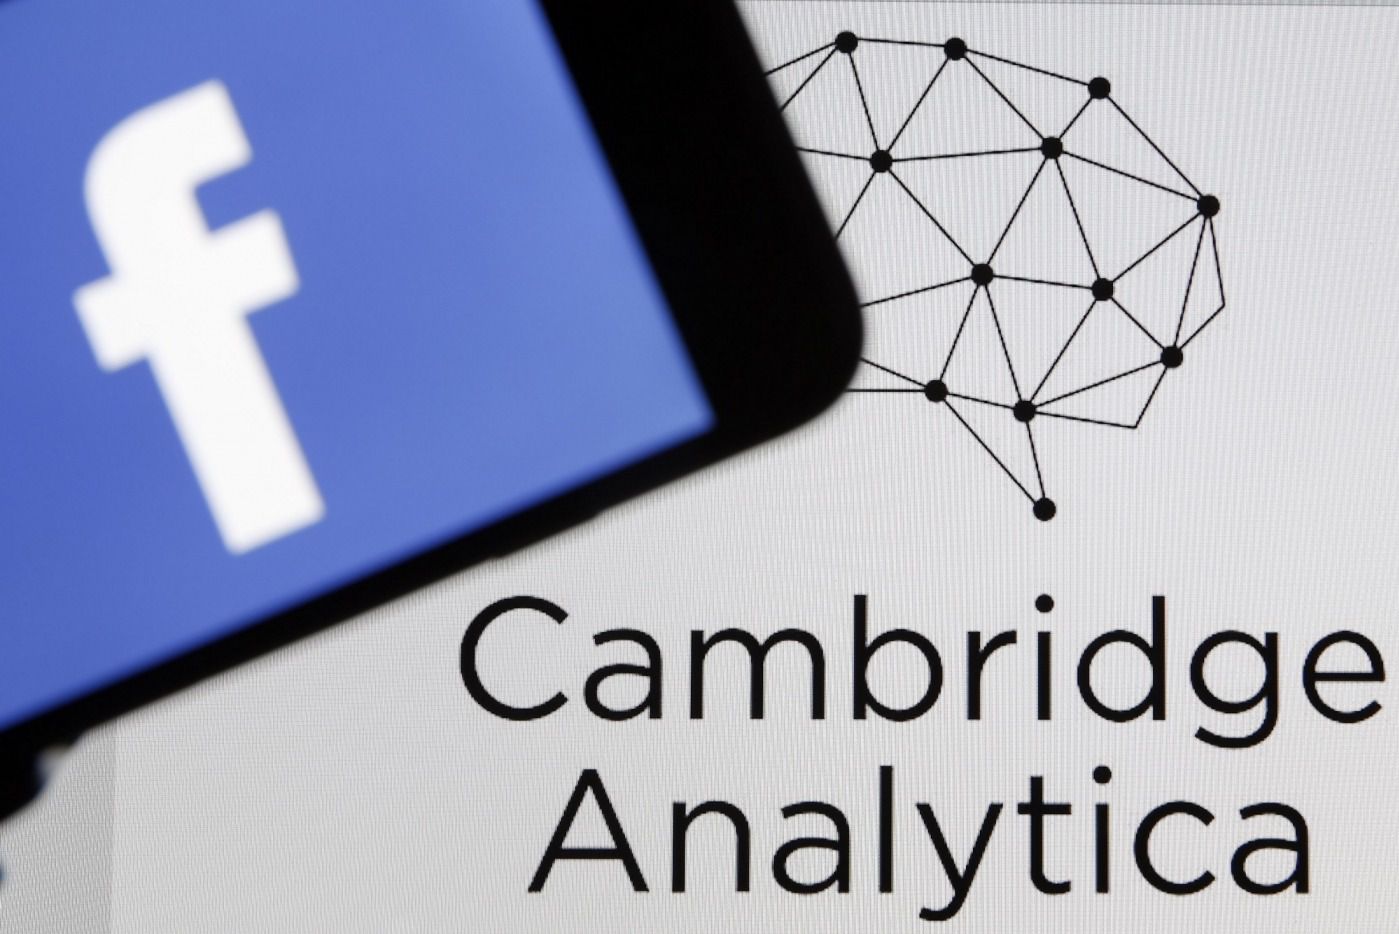 ФБР почало розслідування діяльності Cambridge Analytica. Компанію підозрюють у збиранні даних 87 мільйонів користувачів соцмережі Facebook без їх згоди.